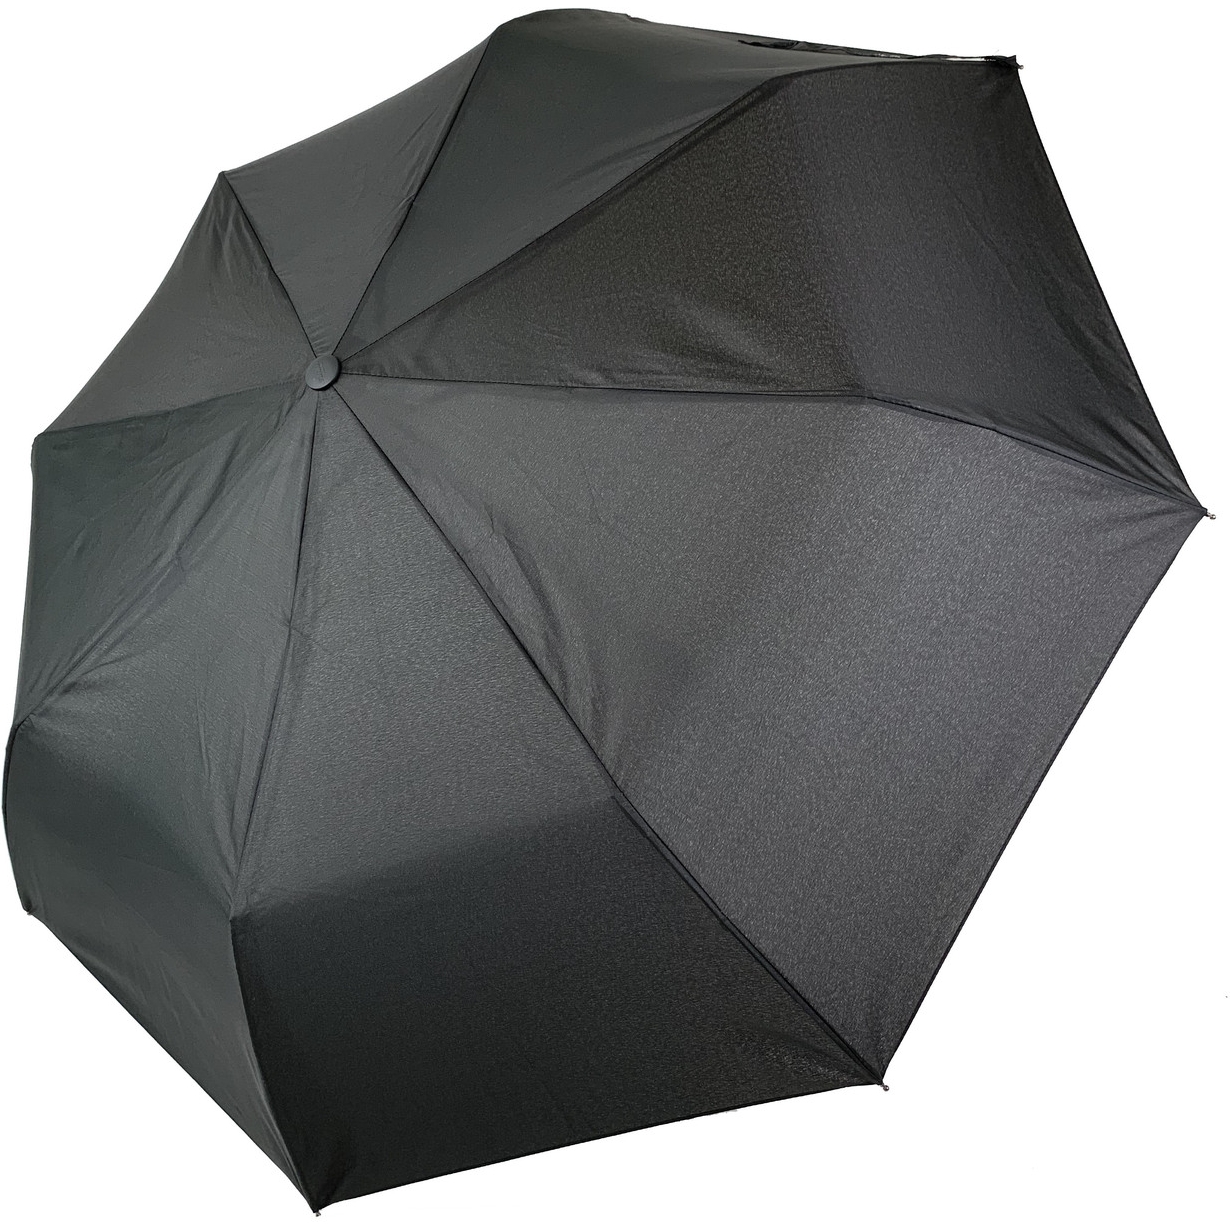 Мужской складной зонтик полуавтомат The Best 98 см черный - фото 1